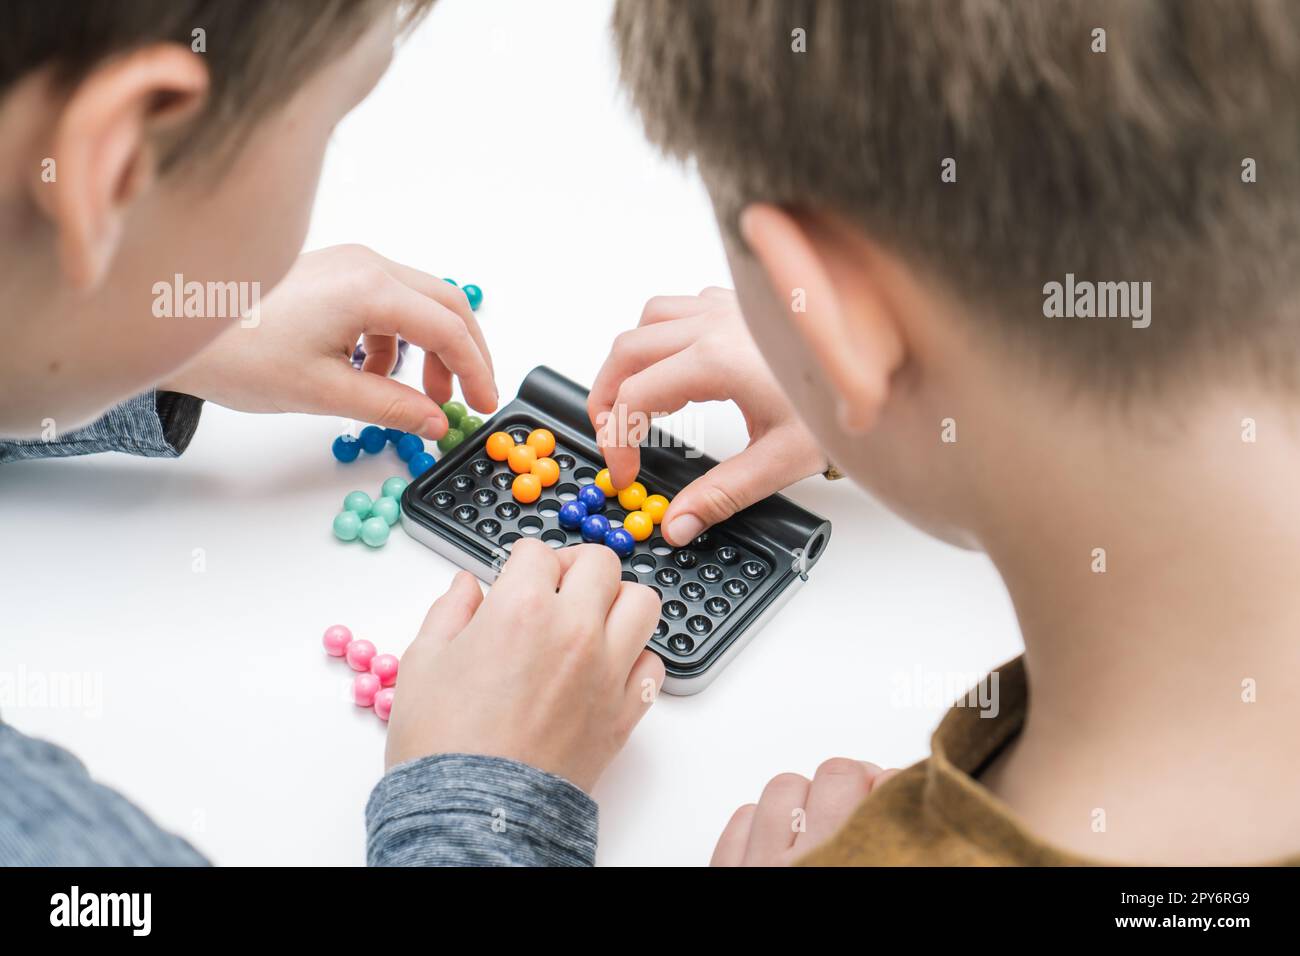 Les garçons jouent au tetris de table sur la table, de la vue de la nuque. Les mains des joueurs collectent des détails colorés sur le plateau de jeu. Jeux de société. Banque D'Images